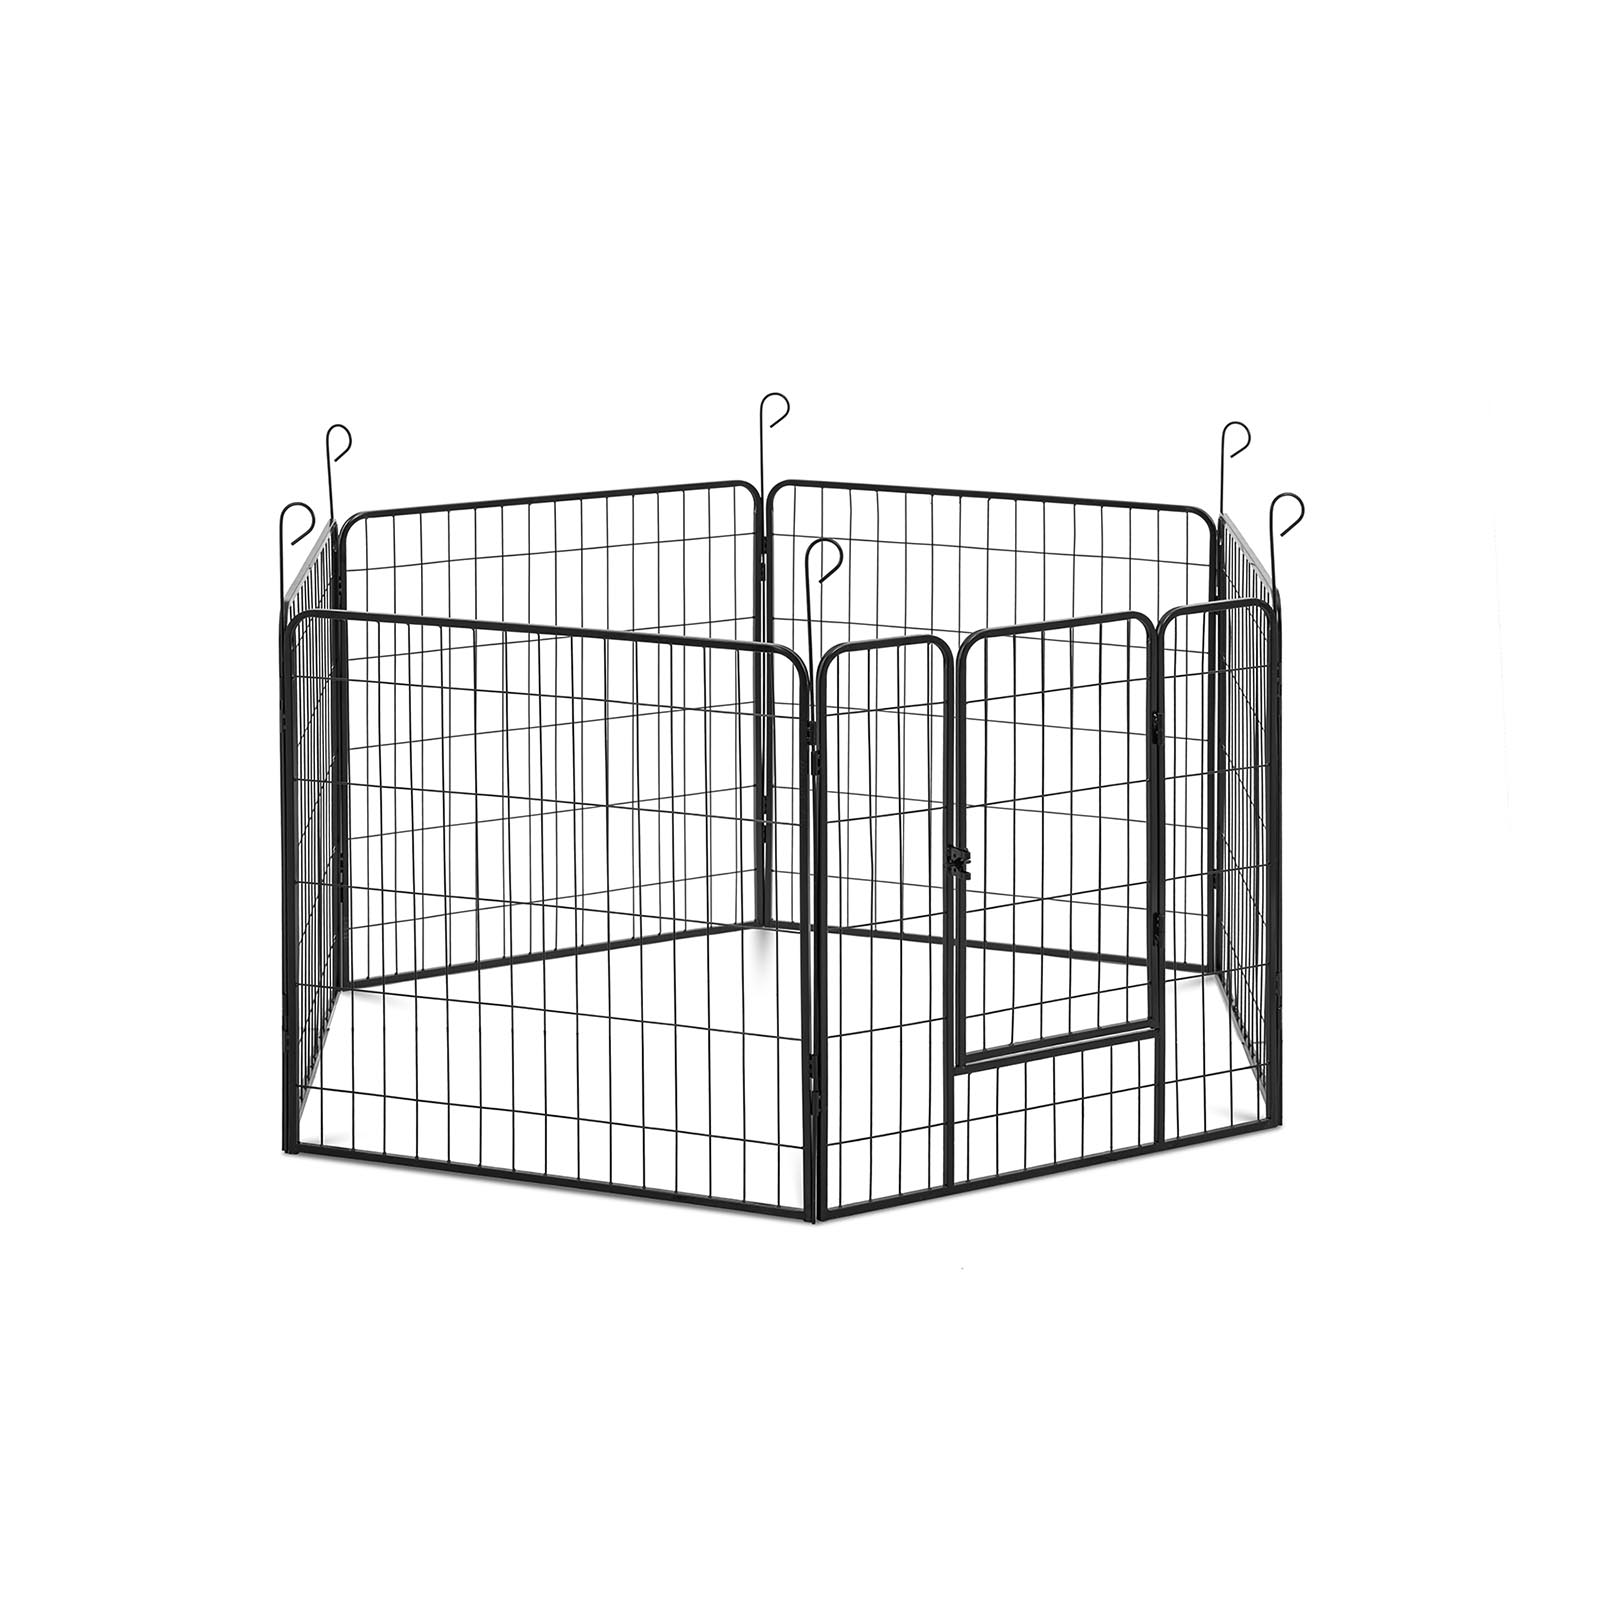 Kutya járóka - ajtóval - 6 moduláris szegmens - beltéri és kültéri használatra | Wiesenfield